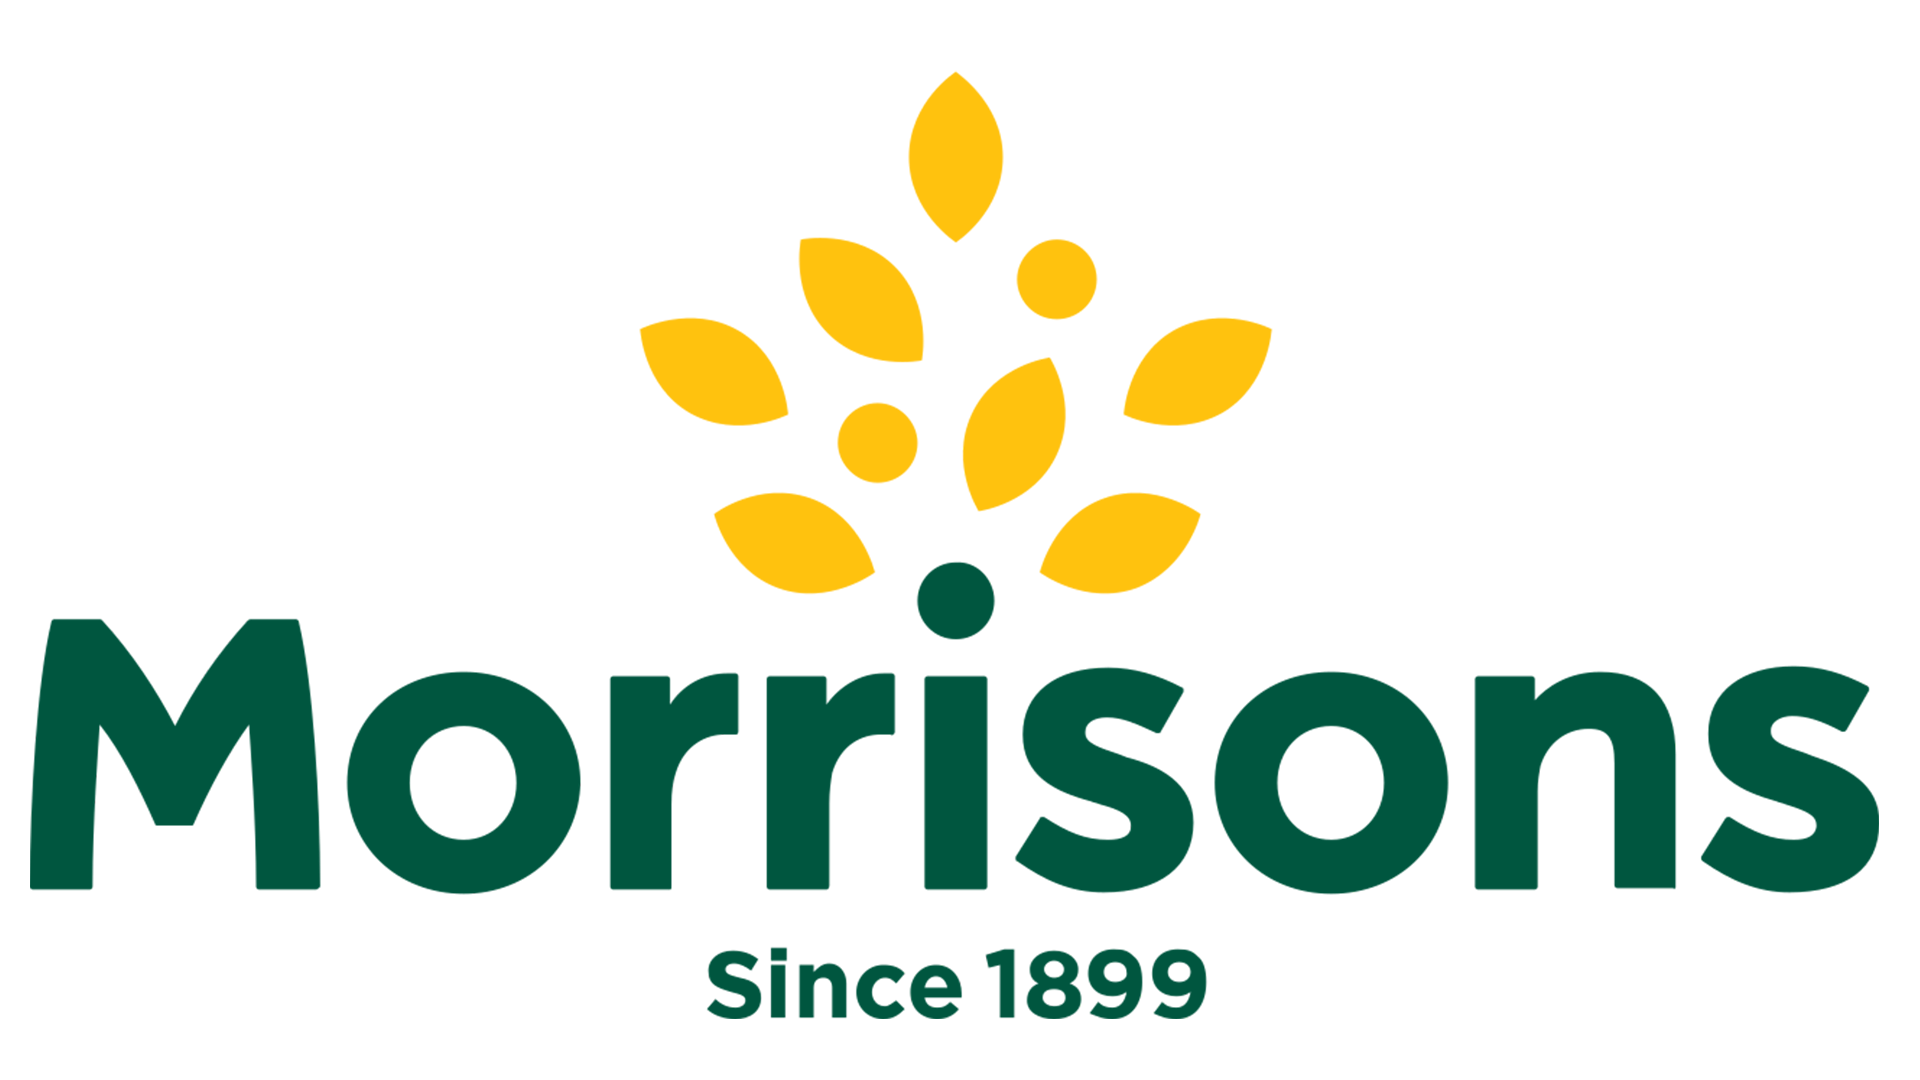 Morrisons-Logo